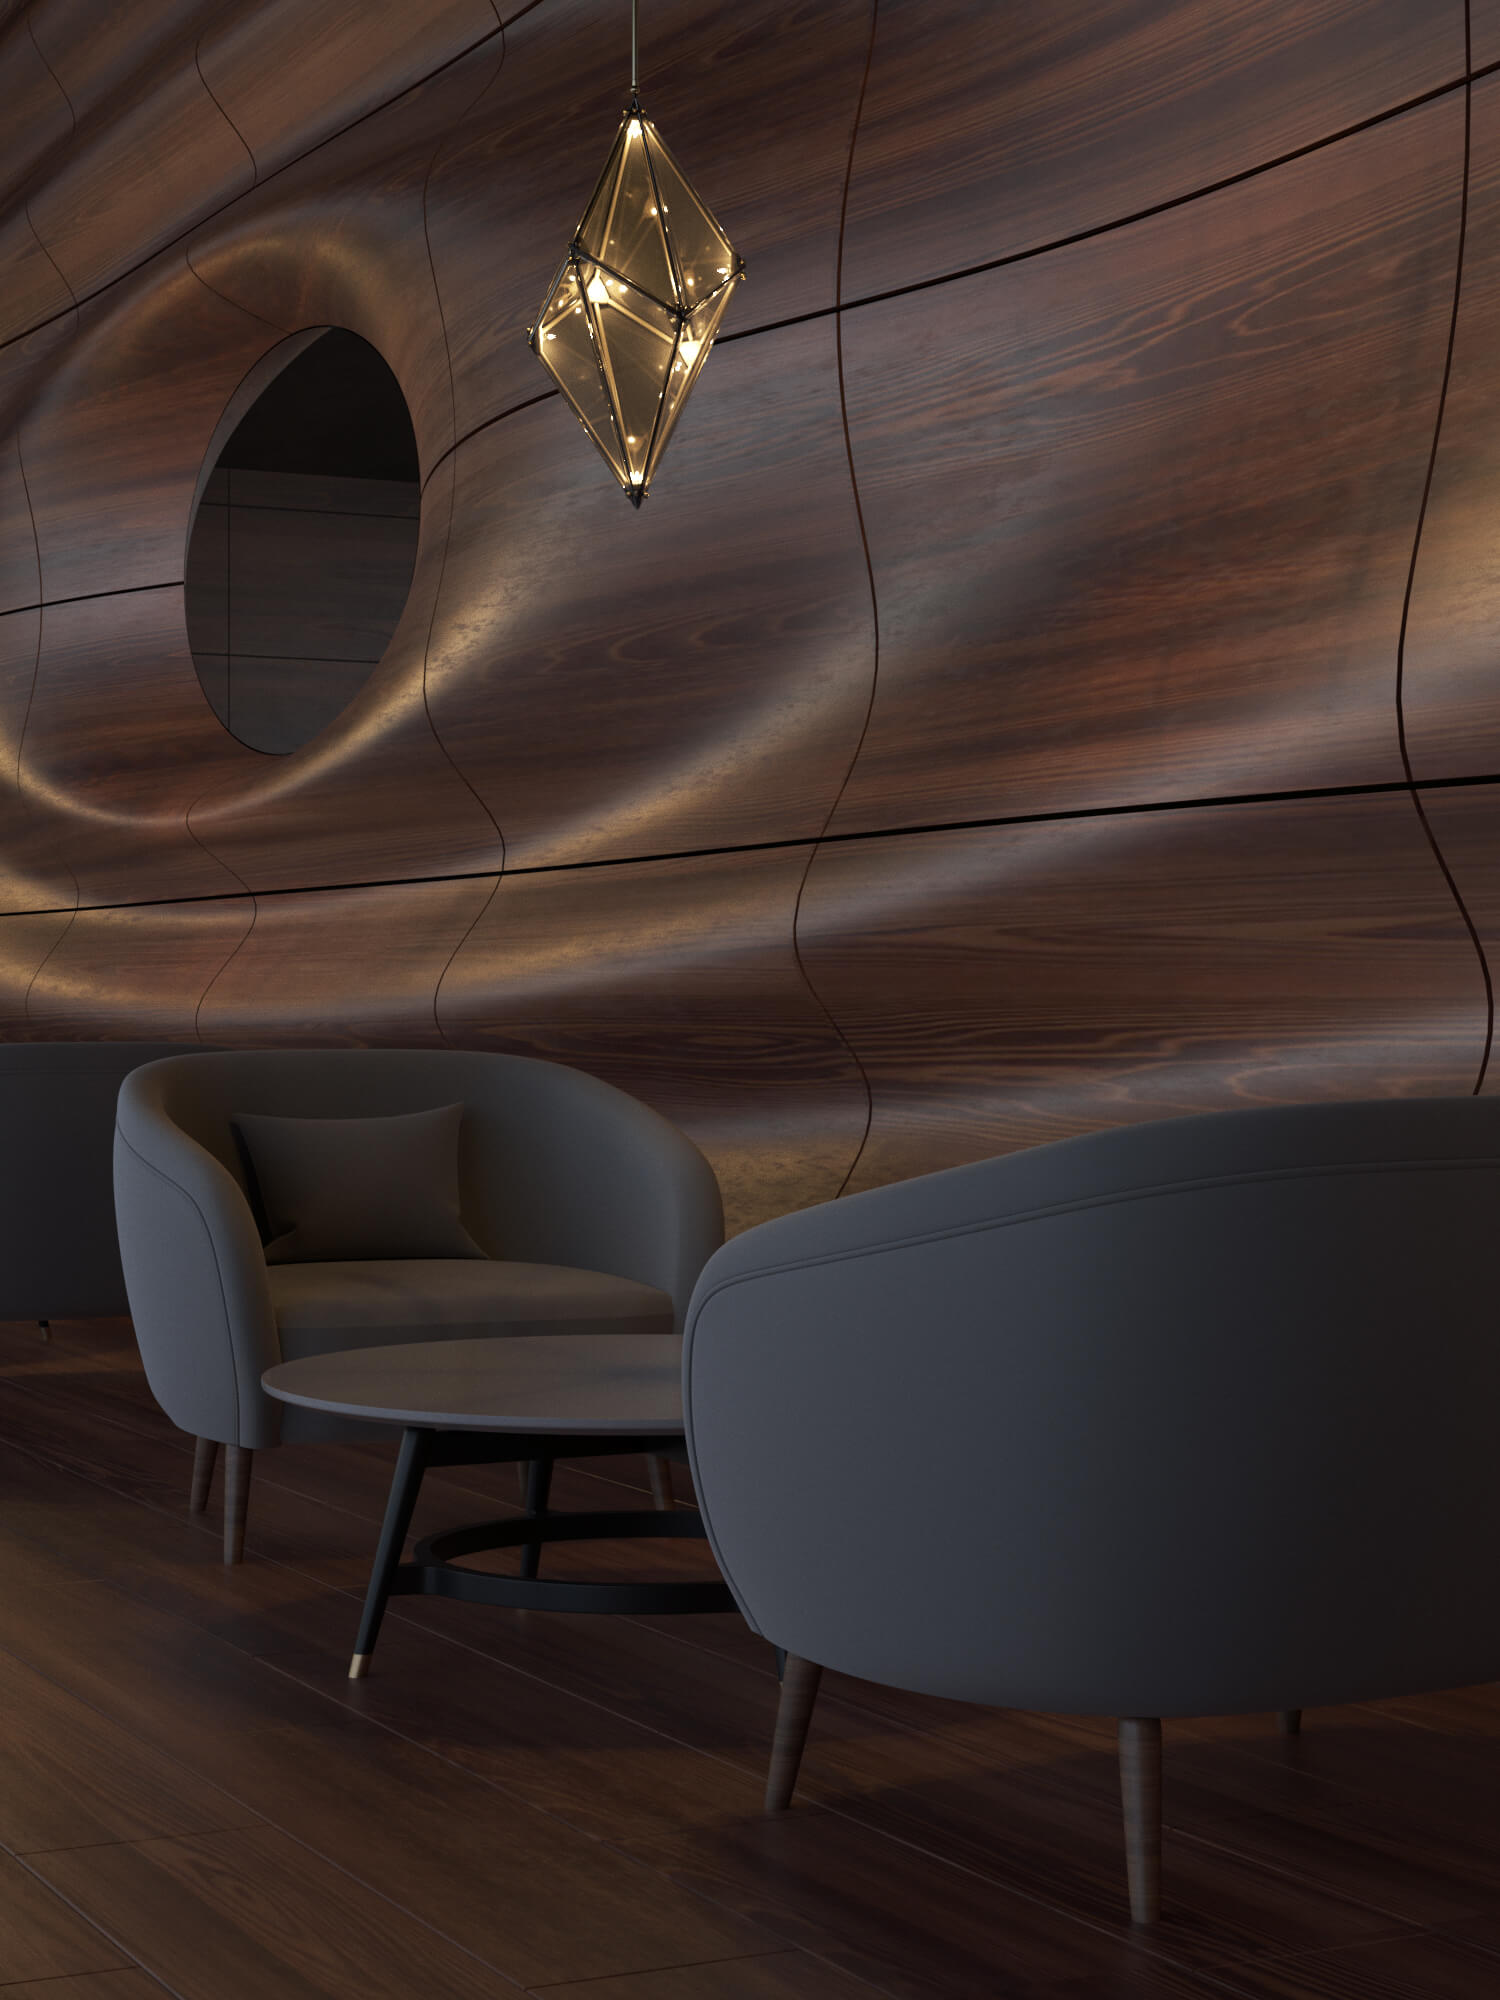 Дизайн интерьера кафе. В интерьере использованны натуральный камень, деревянные рейки. Все в пастелных приглущенных тонах.23